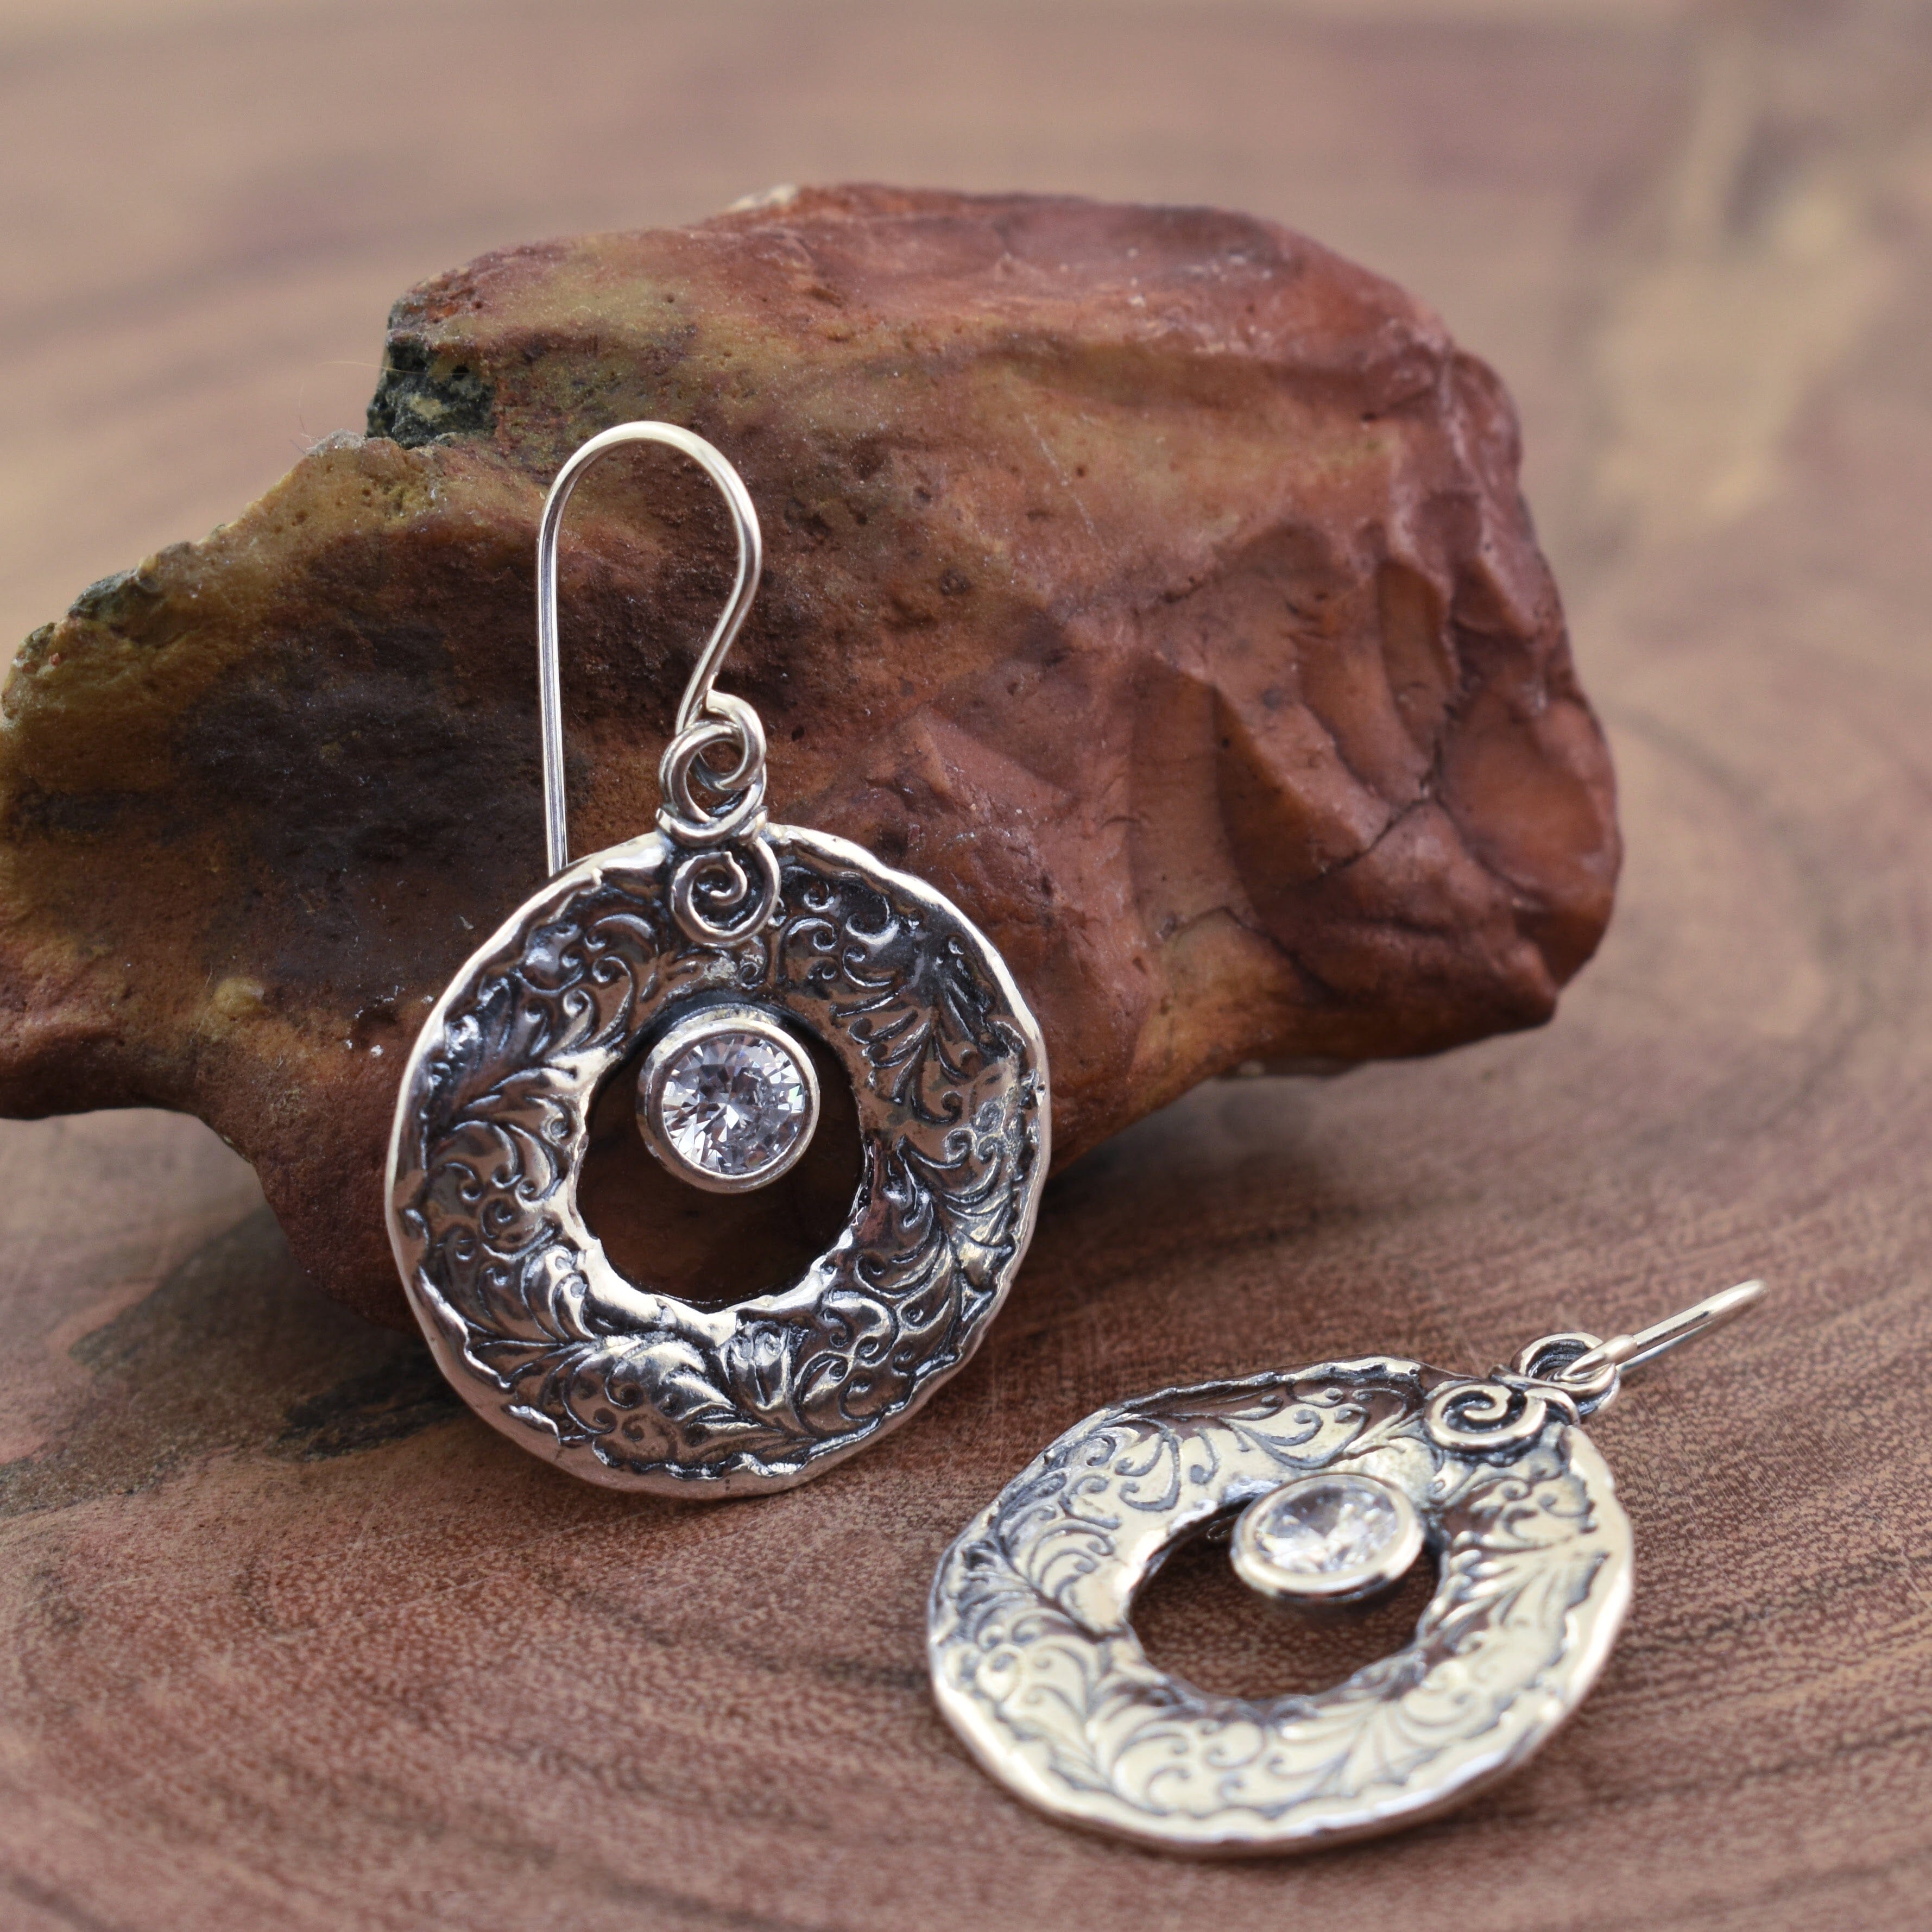 .925 sterling silver and CZ earrings Carpe Diem